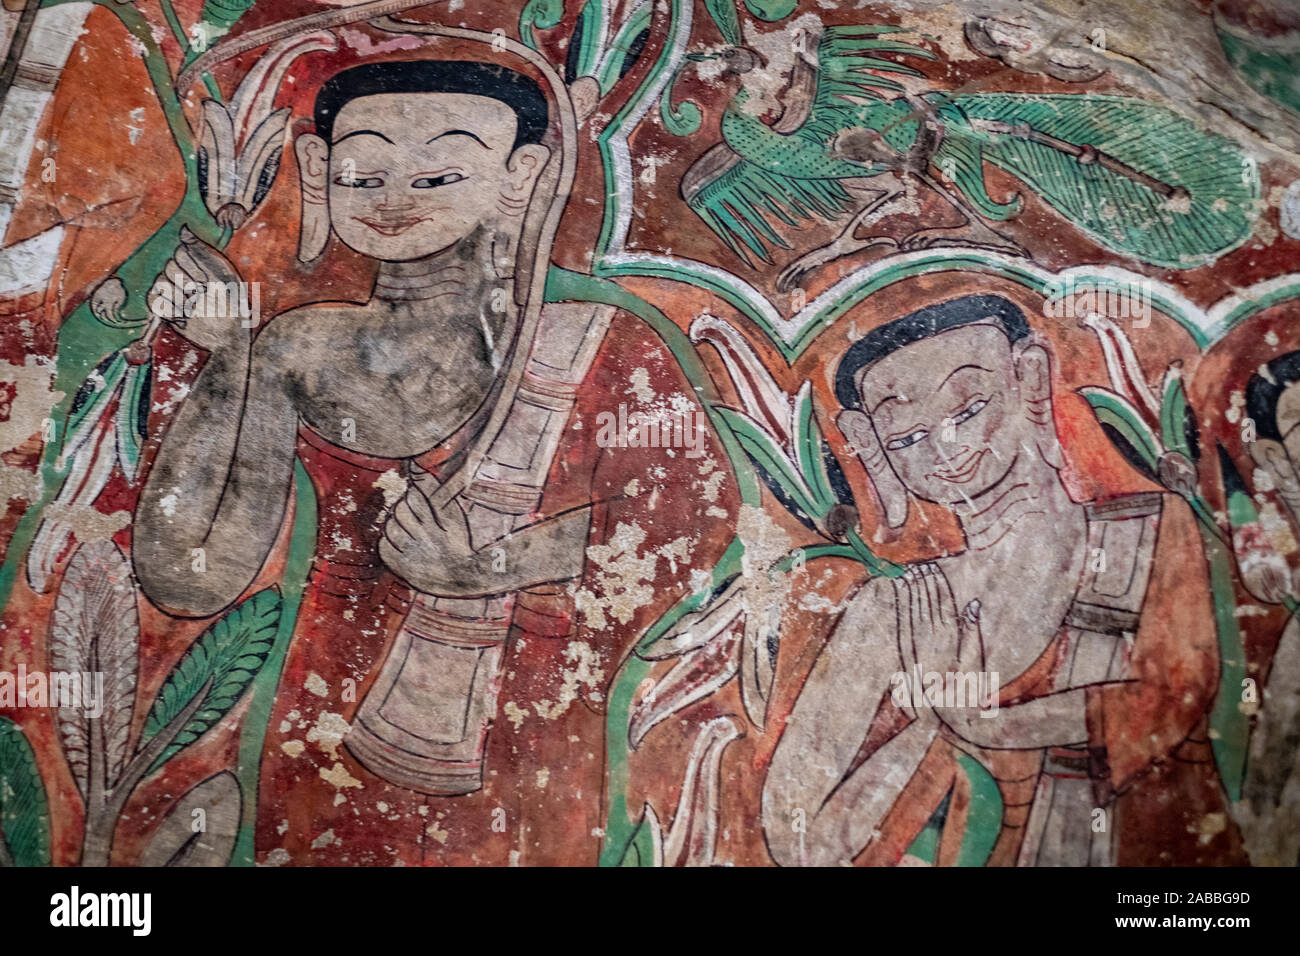 Wandmalerei und religiöse Kunstwerke schmücken die Phowin Taung Höhlen entlang der Chindwin Fluss im Nordwesten Myanmar (Birma) Stockfoto